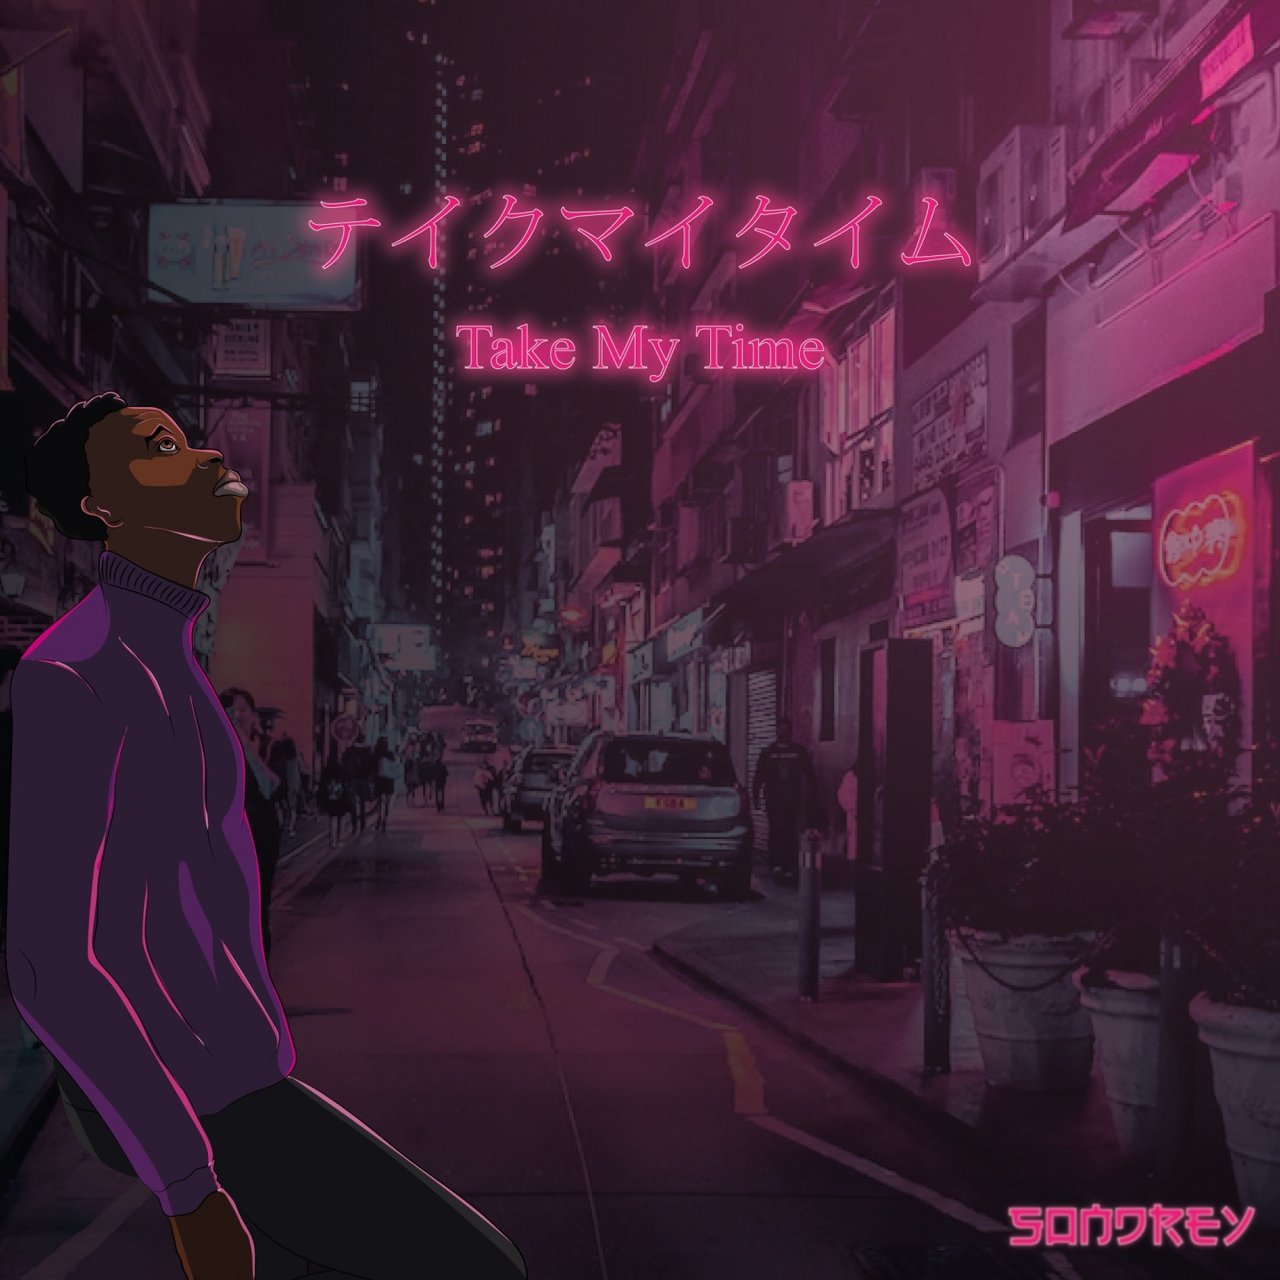 Sondrey — Take My Time cover artwork